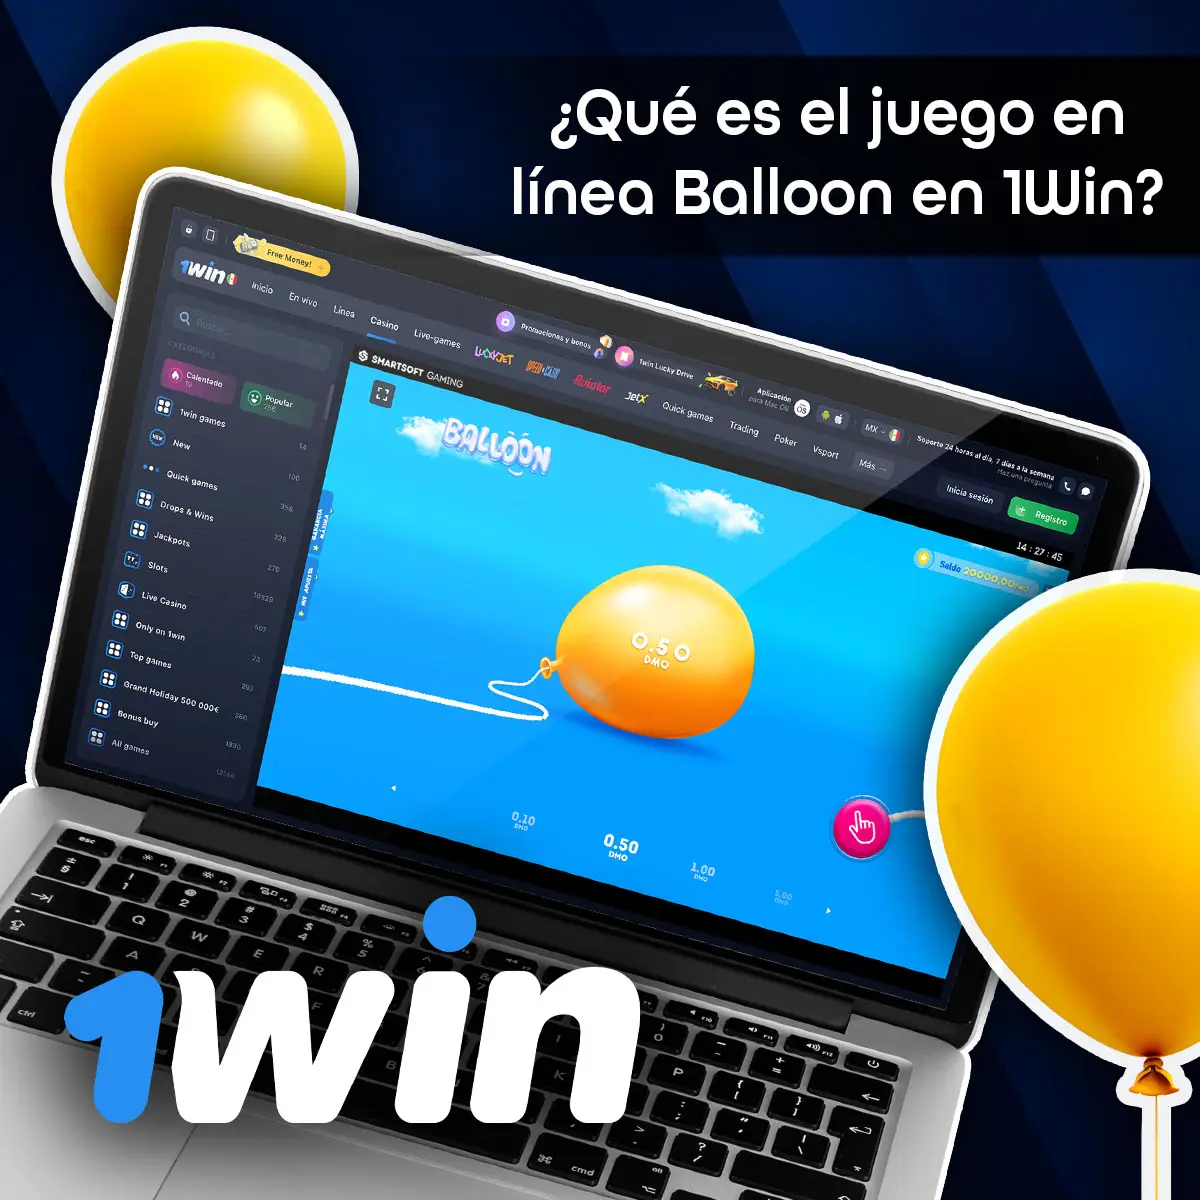 Información sobre el juego Balloon en la plataforma 1win